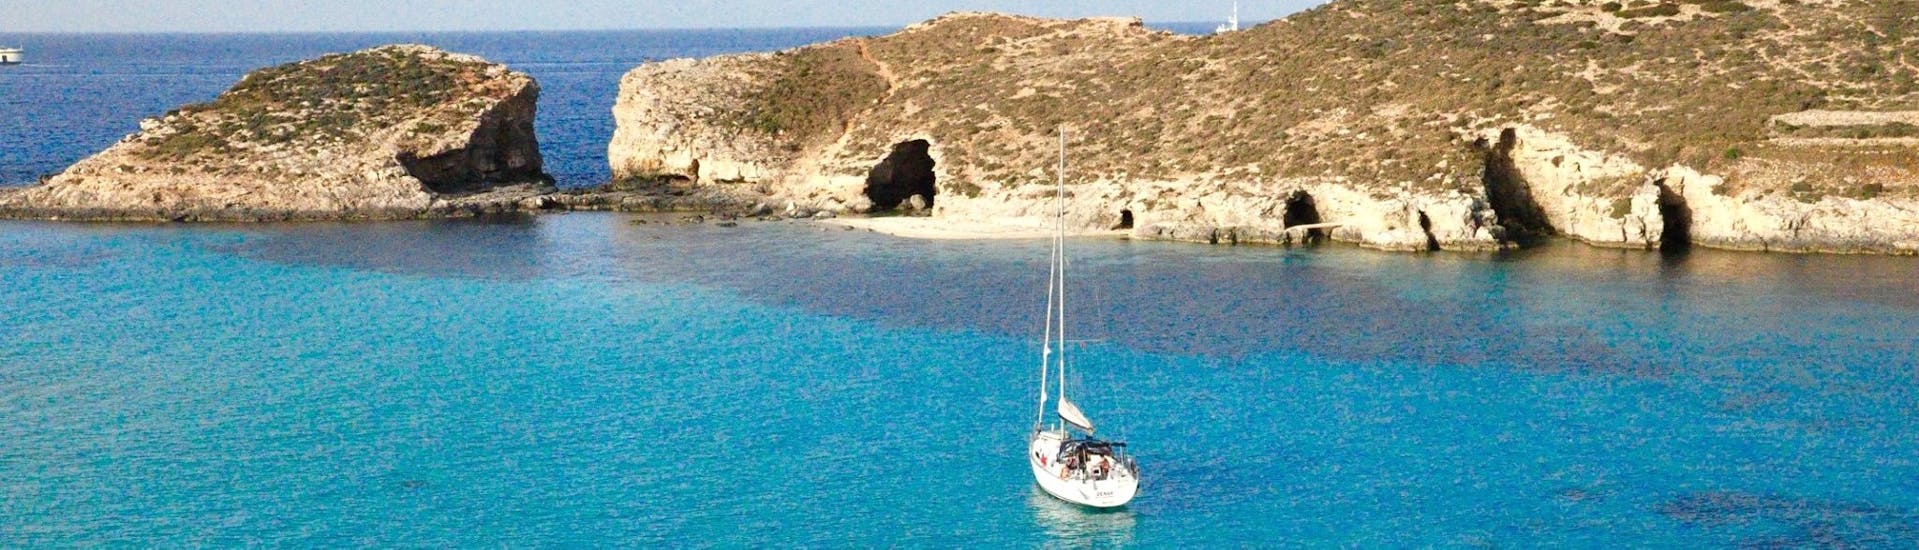 Nuestro barco durante un viaje en barco privado desde Ċirkewwa a los mejores lugares de Malta con Outdoor Explorers.